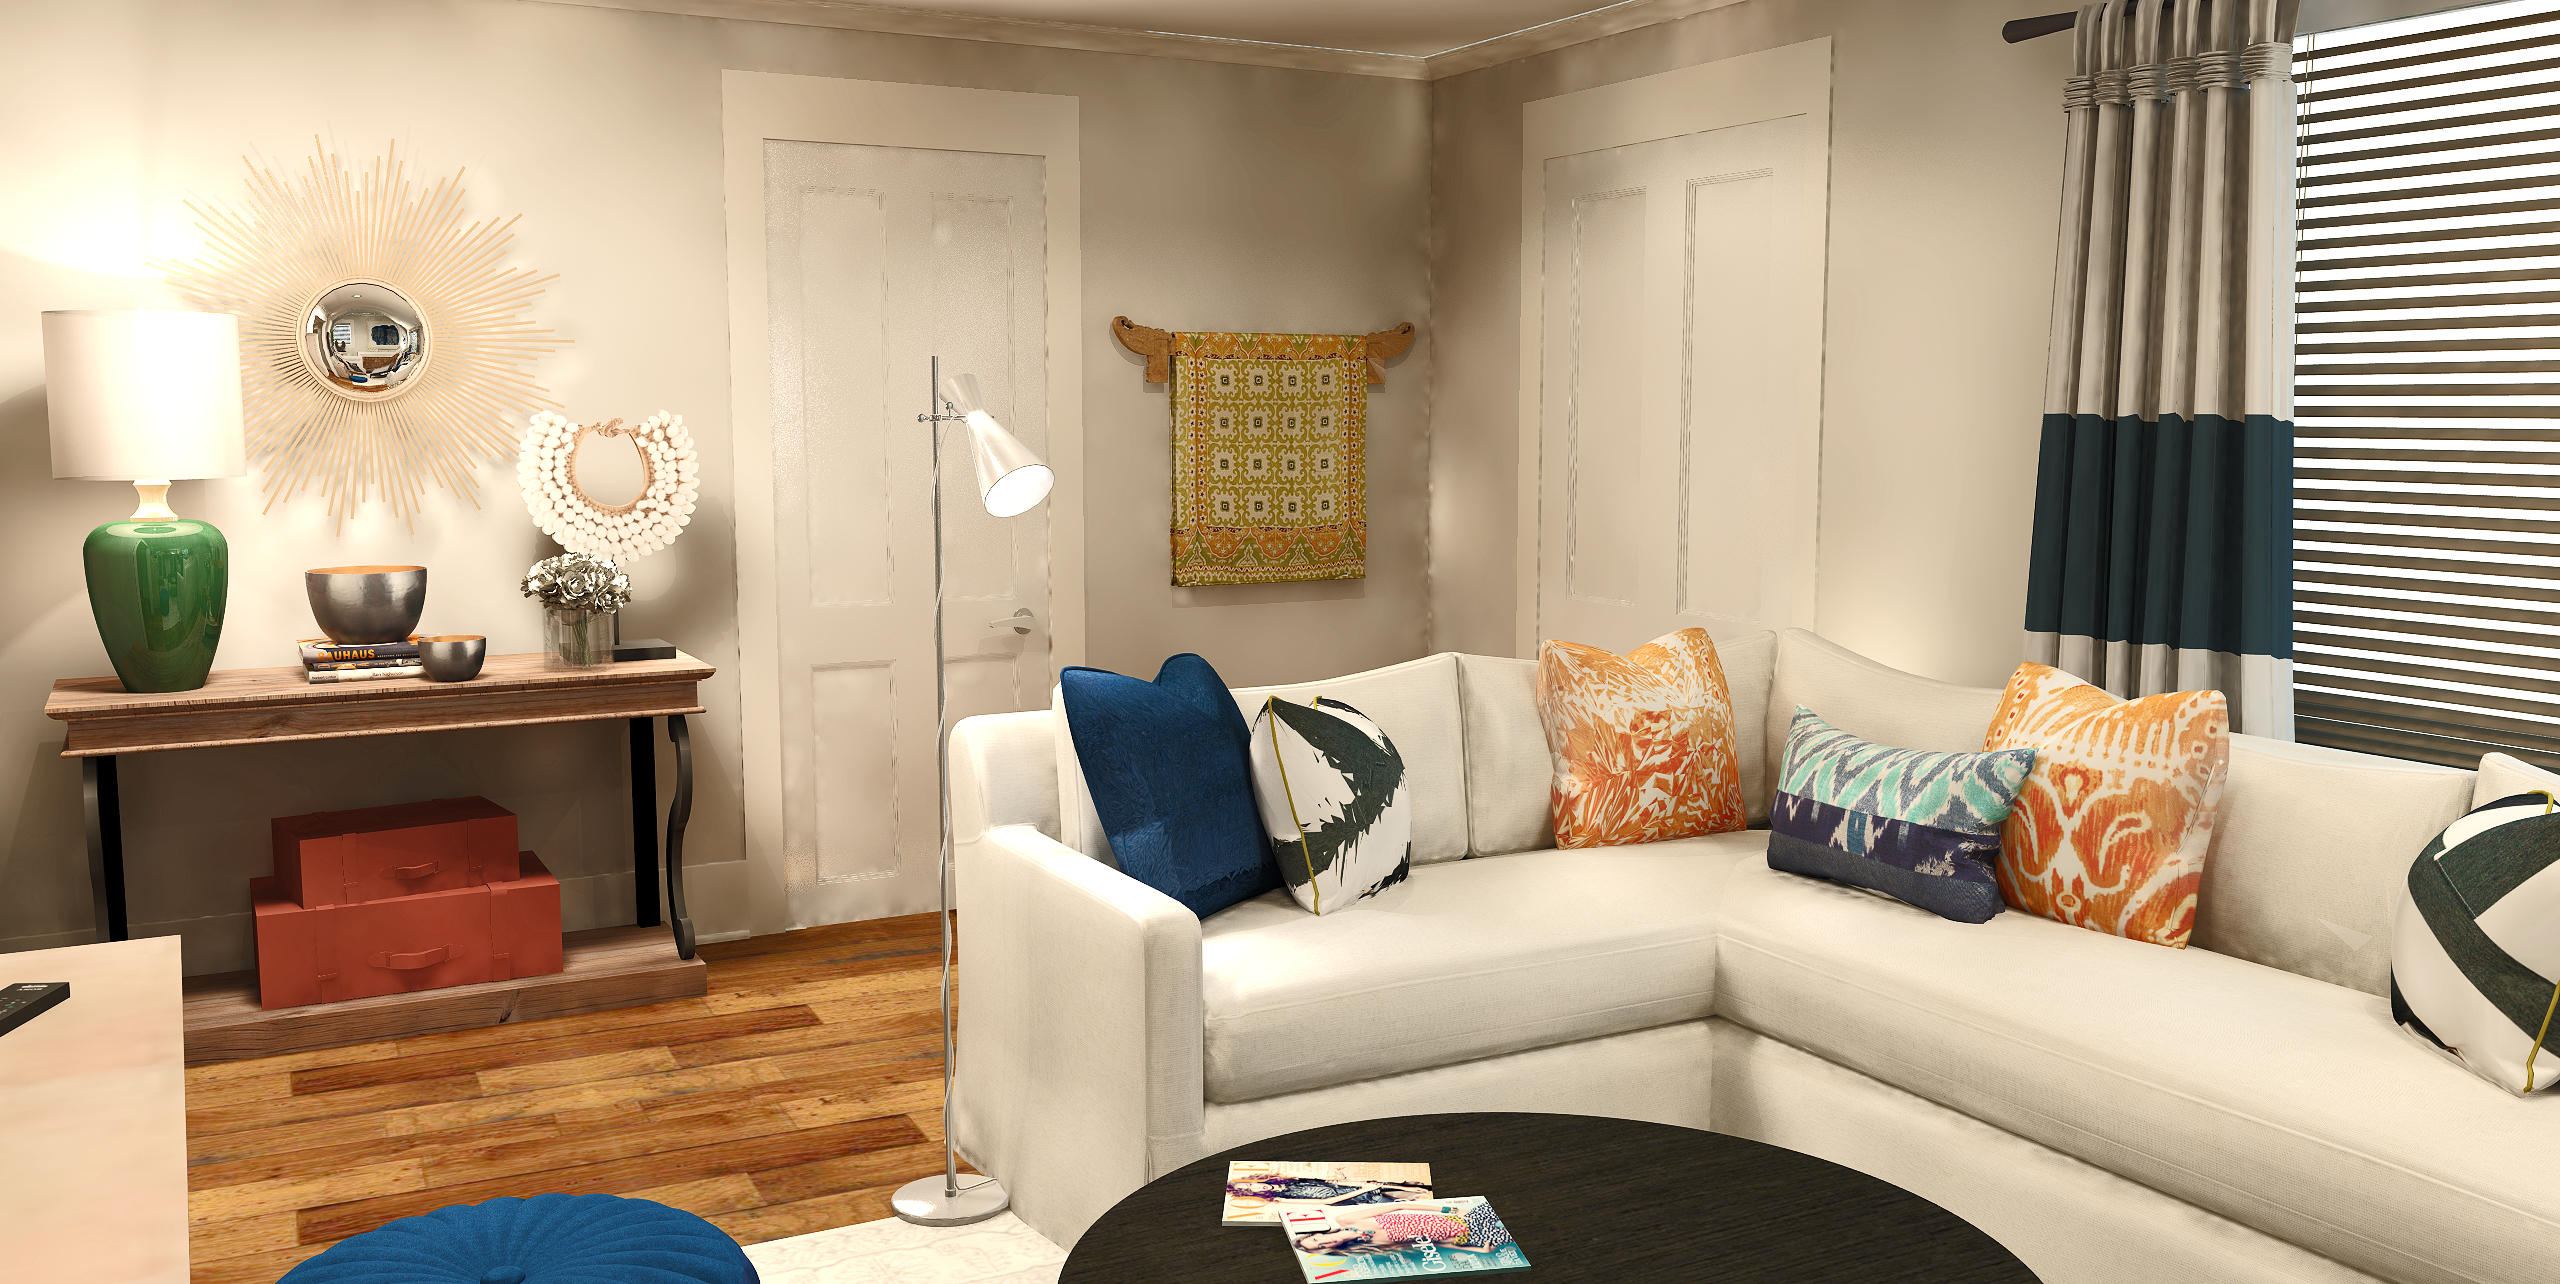 Online Living Dining Room Design interior design samples 3